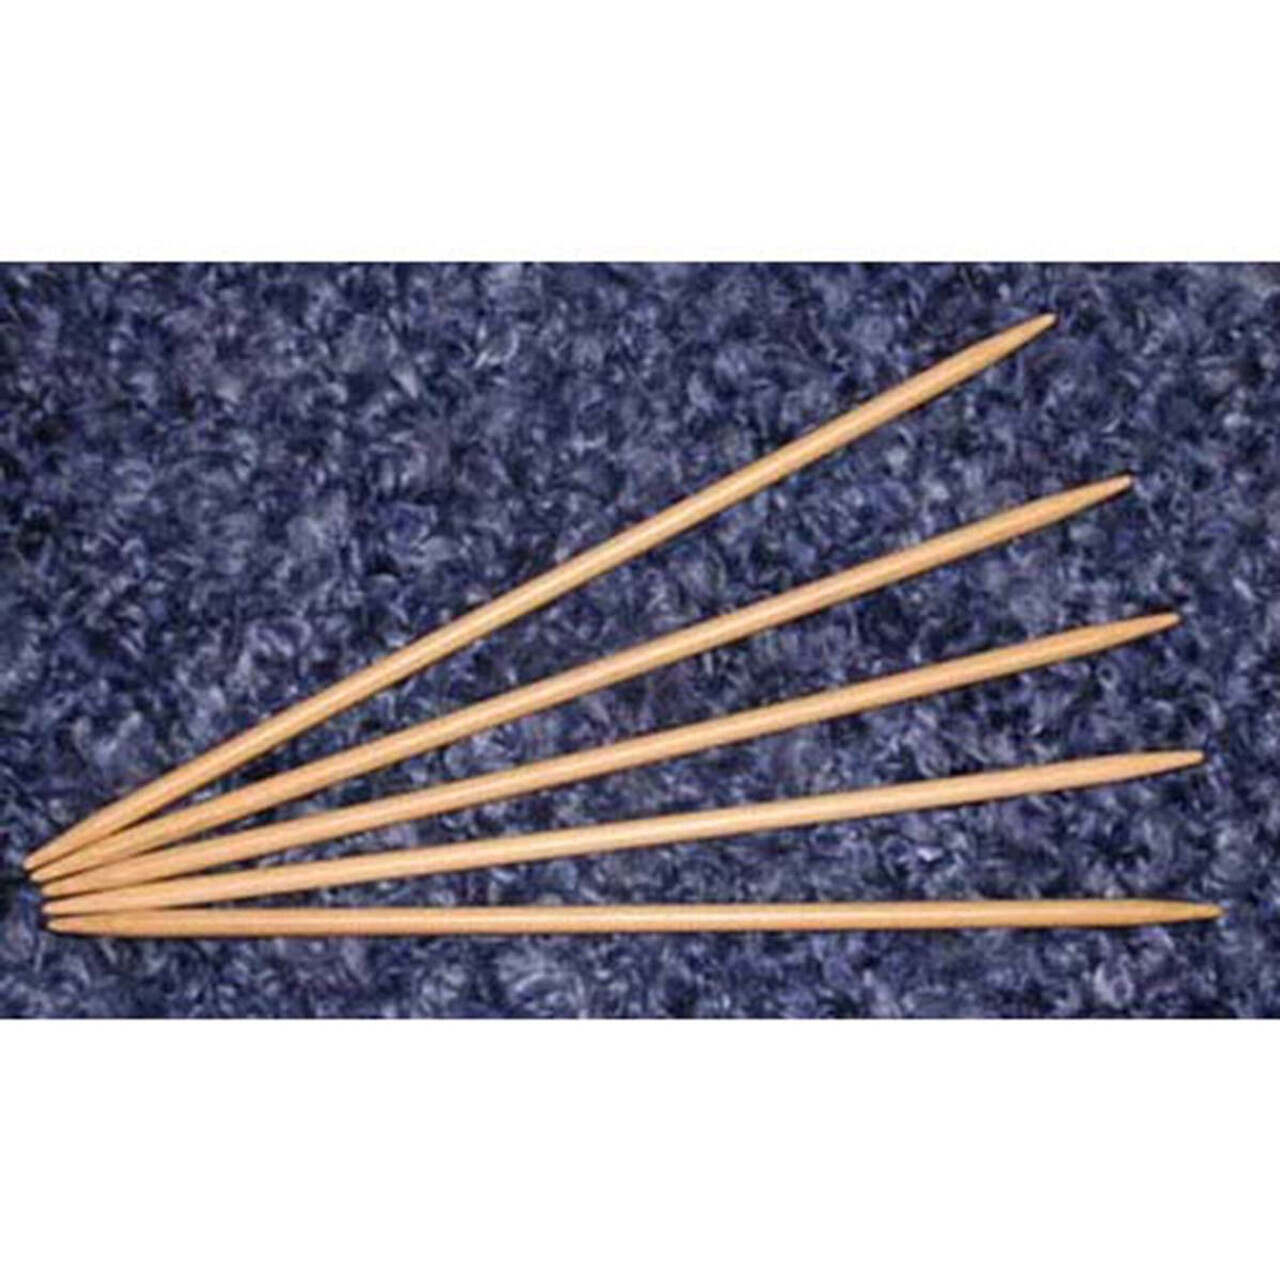 Takumi Bamboo Knitting Needles Double Pointed (7) No. 9